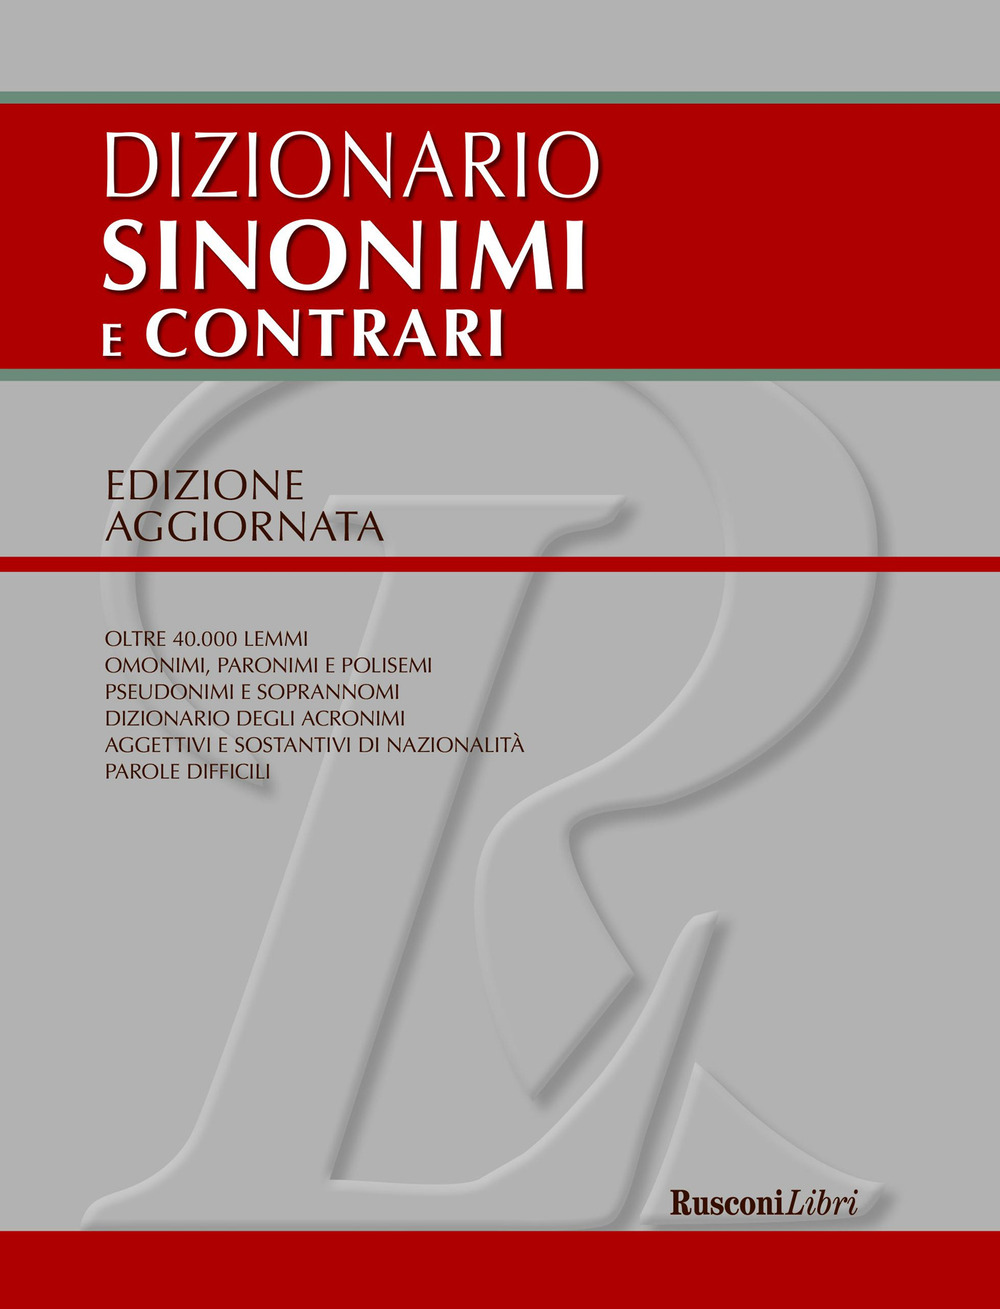 Image of Dizionario sinonimi e contrari